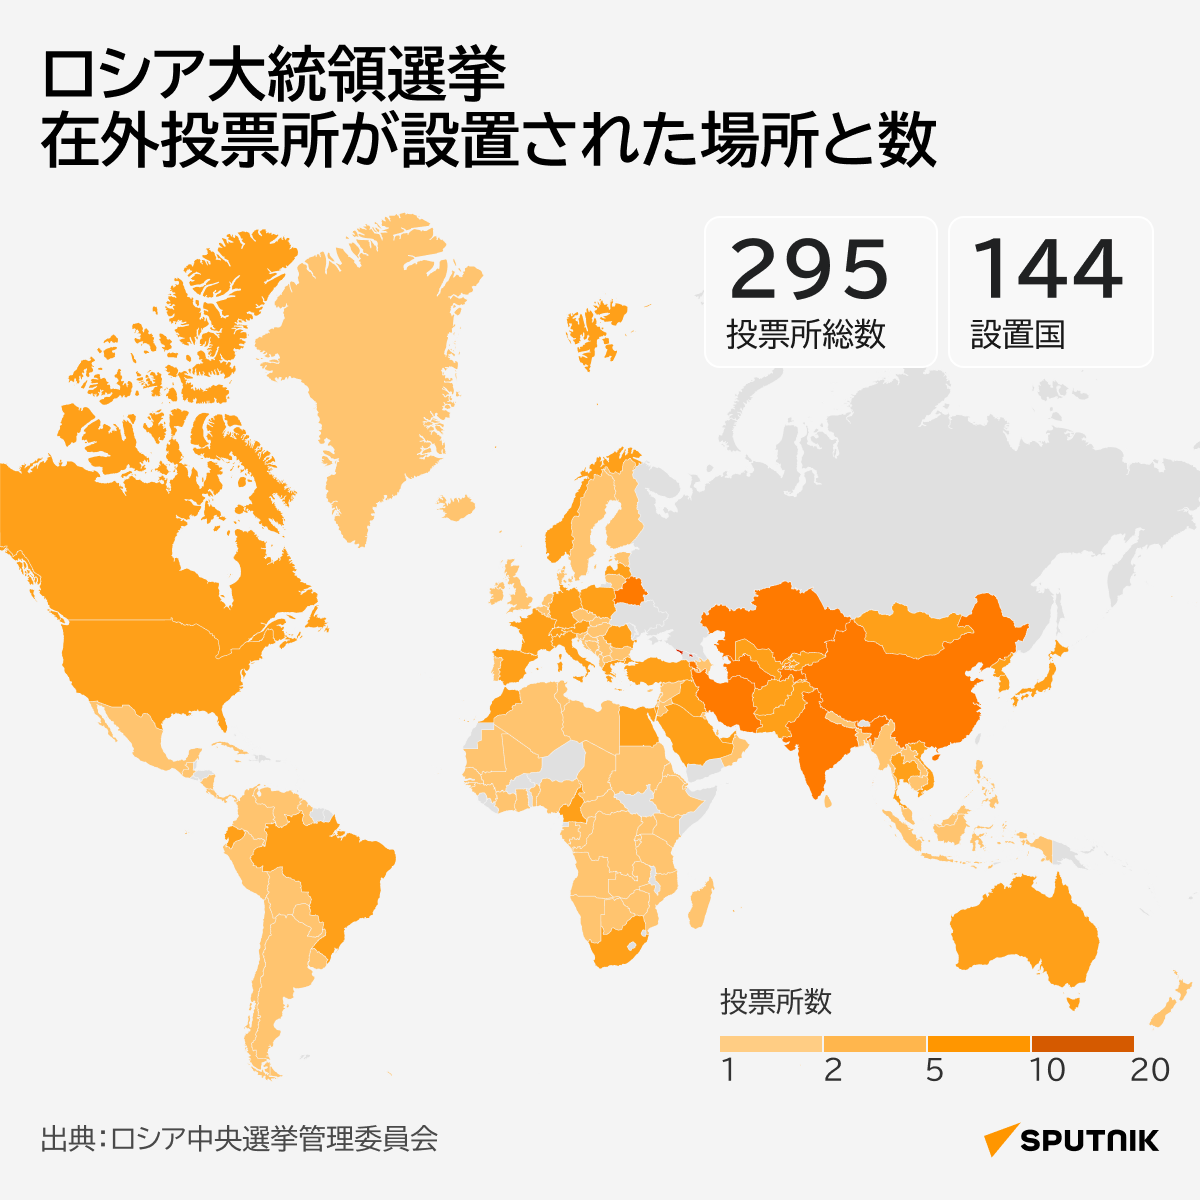 ロシア大統領選挙　在外投票所が設置された場所と数 - Sputnik 日本